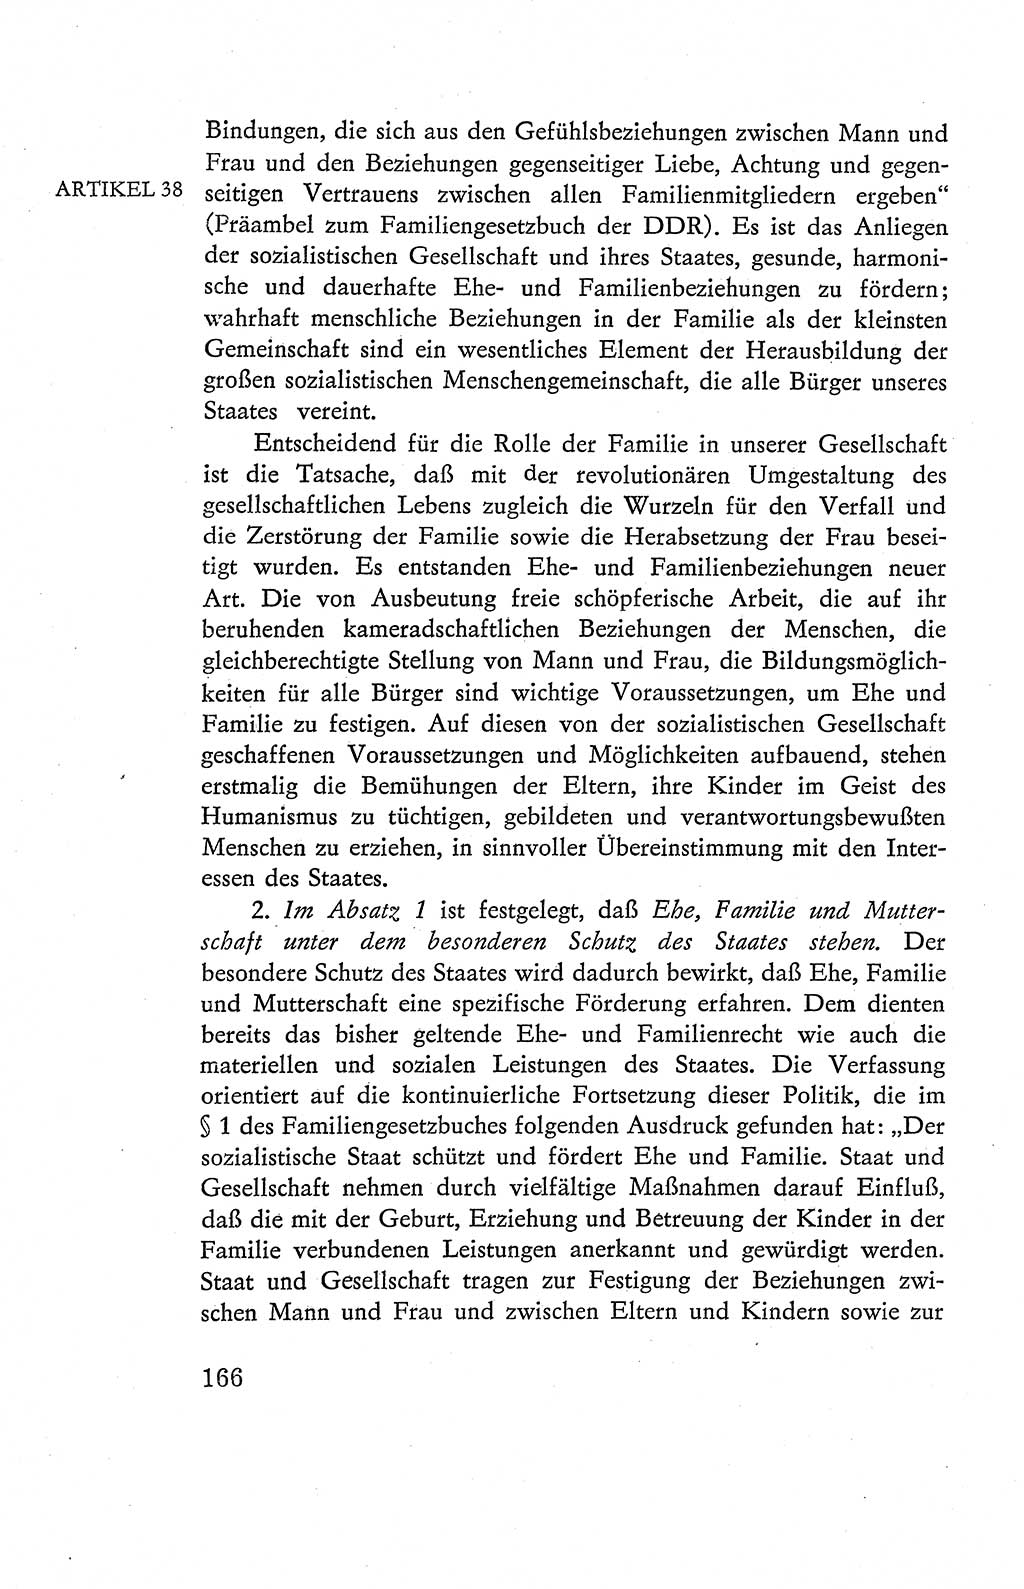 Verfassung der Deutschen Demokratischen Republik (DDR), Dokumente, Kommentar 1969, Band 2, Seite 166 (Verf. DDR Dok. Komm. 1969, Bd. 2, S. 166)